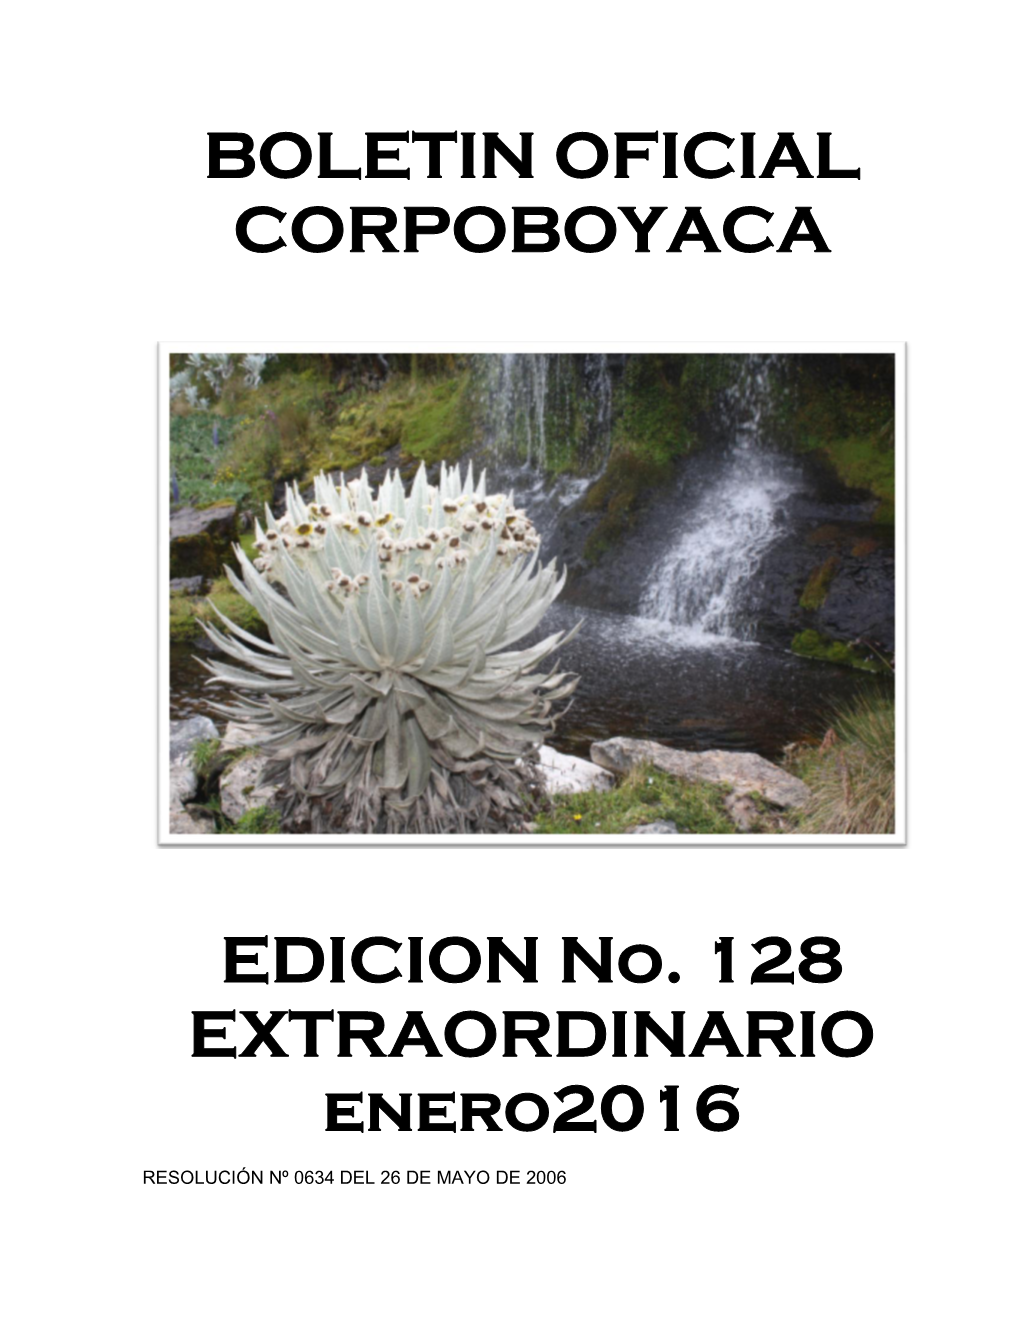 BOLETIN OFICIAL CORPOBOYACA EDICION No. 128